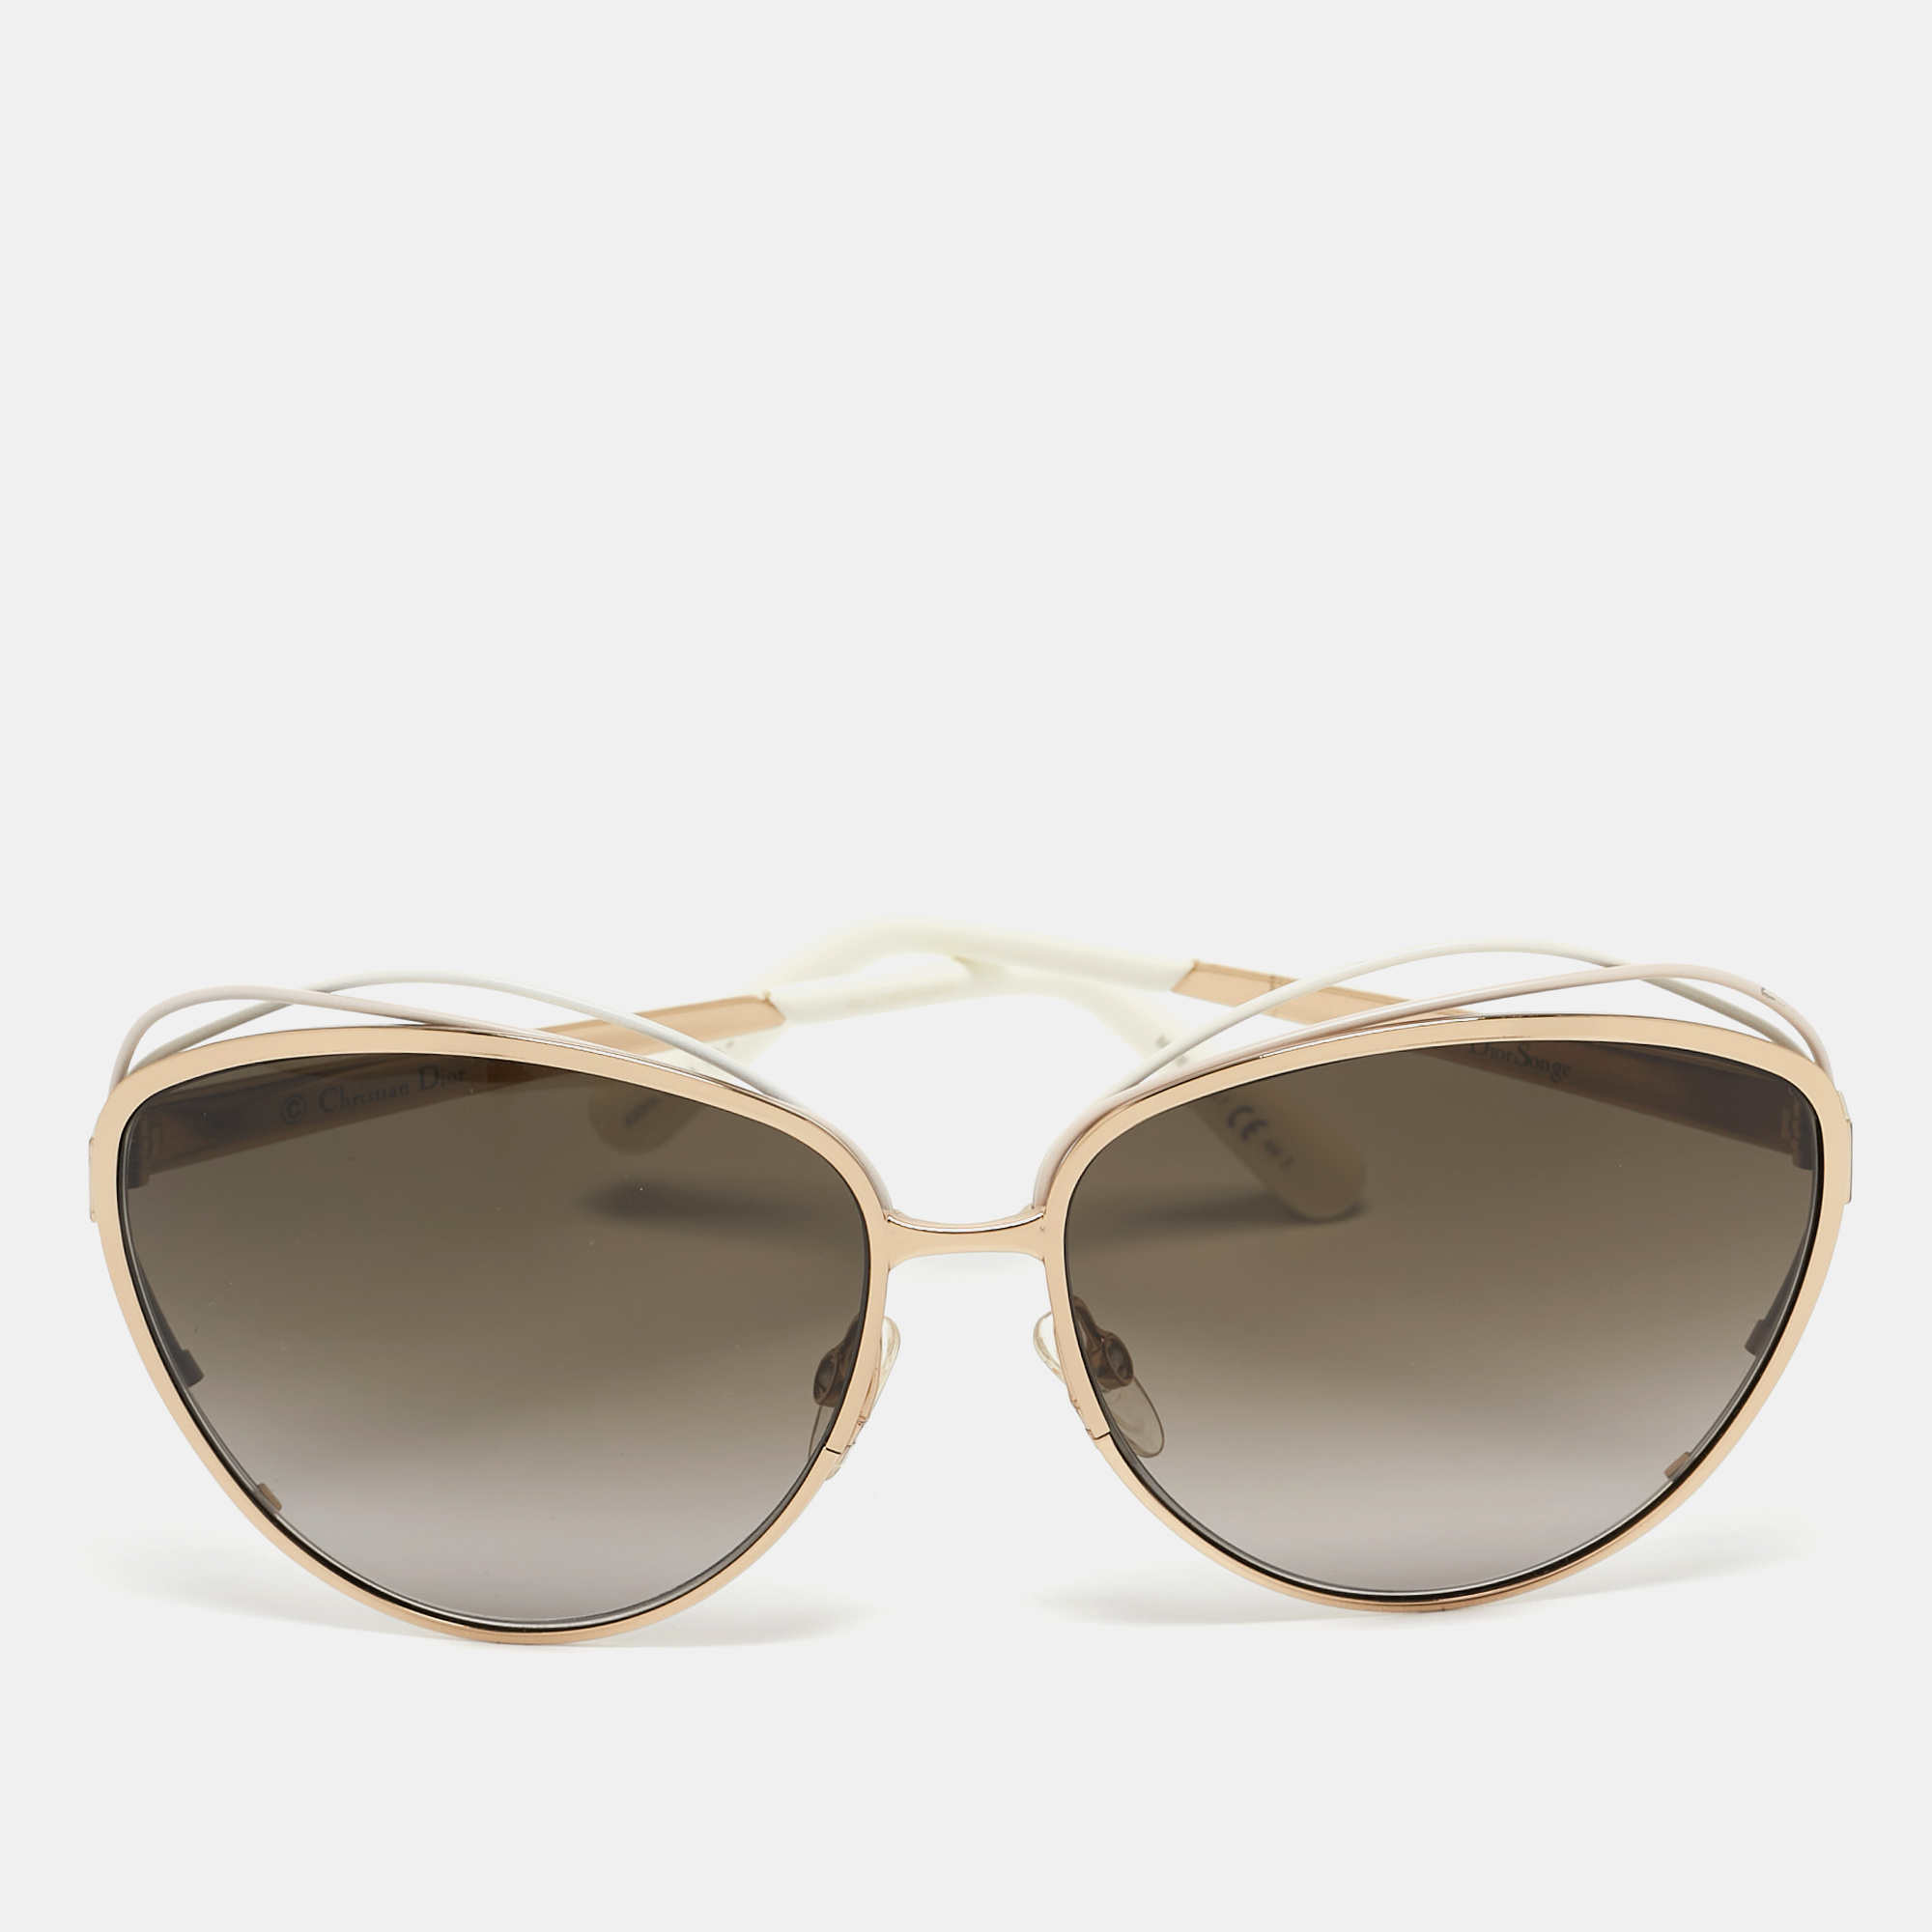 Dior white /gold jqoha aviator sunglasses